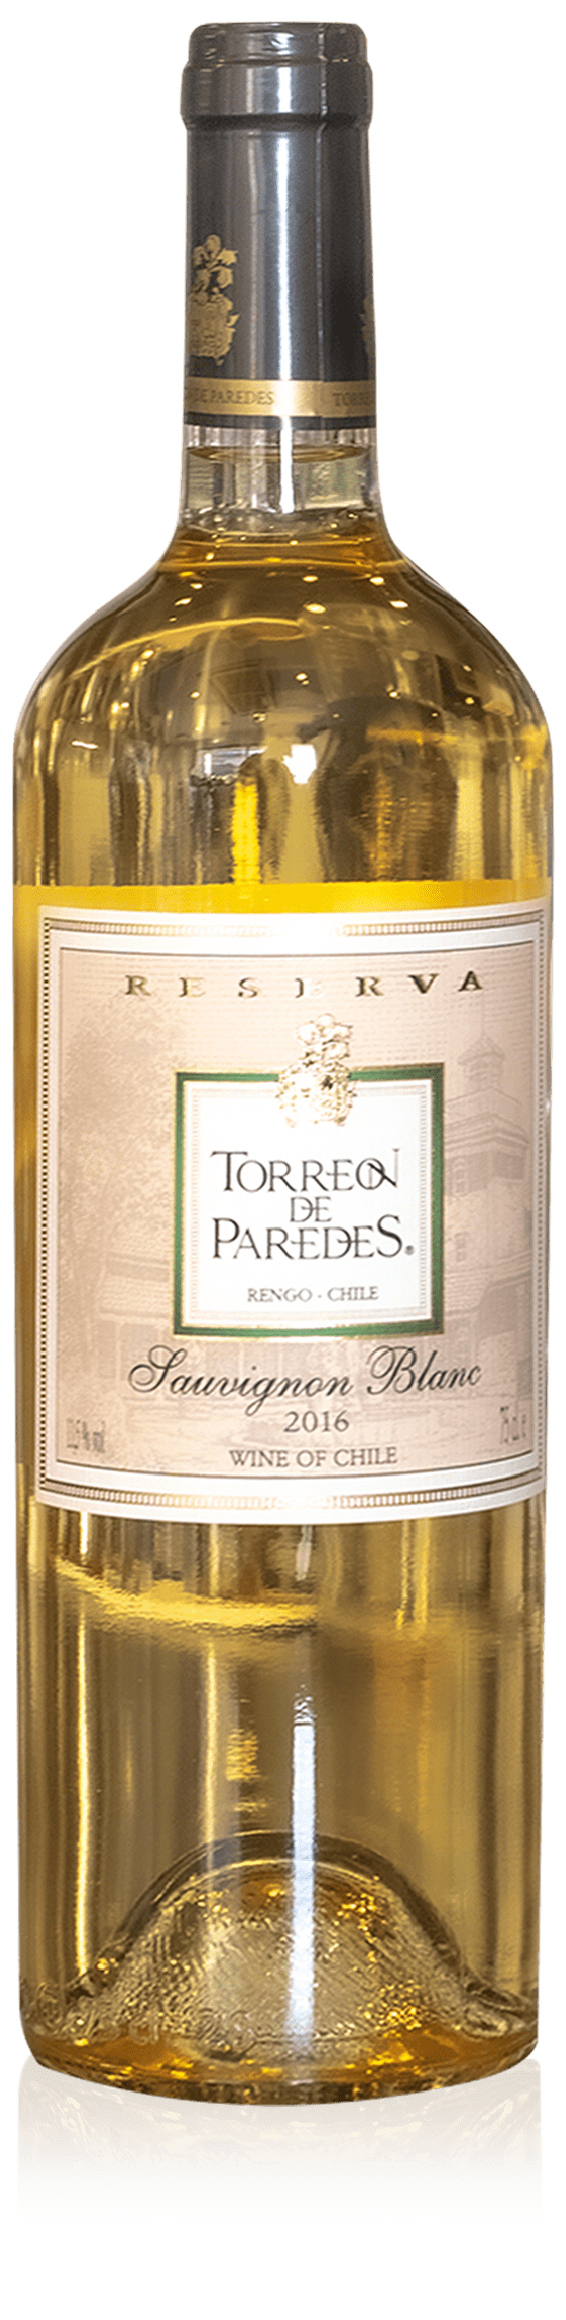 Torreon de Paredes Reserva Sauvignon Blanc 2016